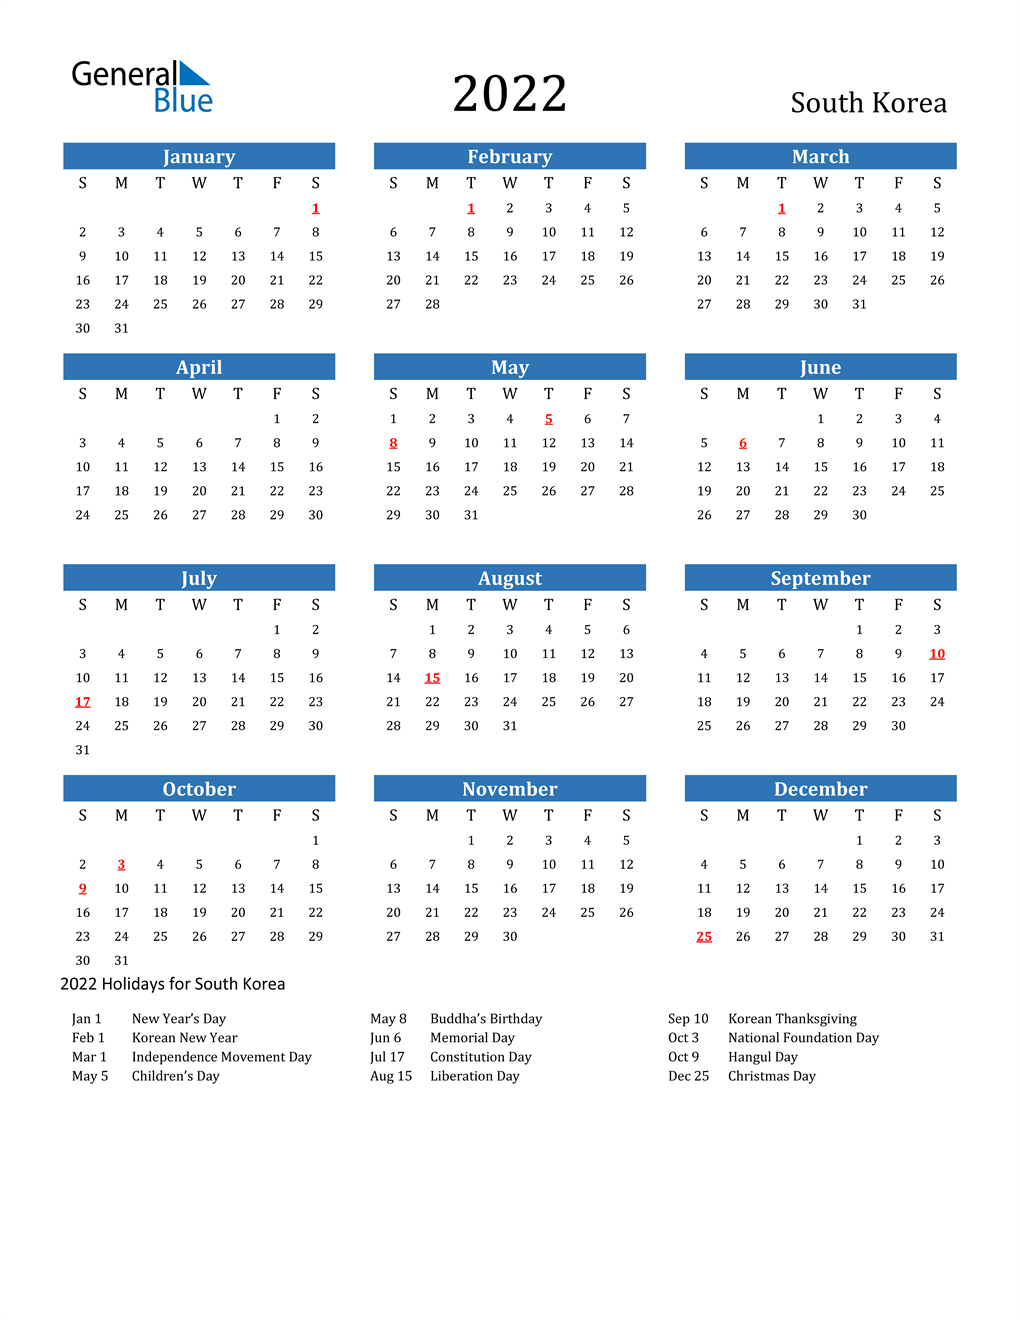 2022 South Korea Calendar With Holidays